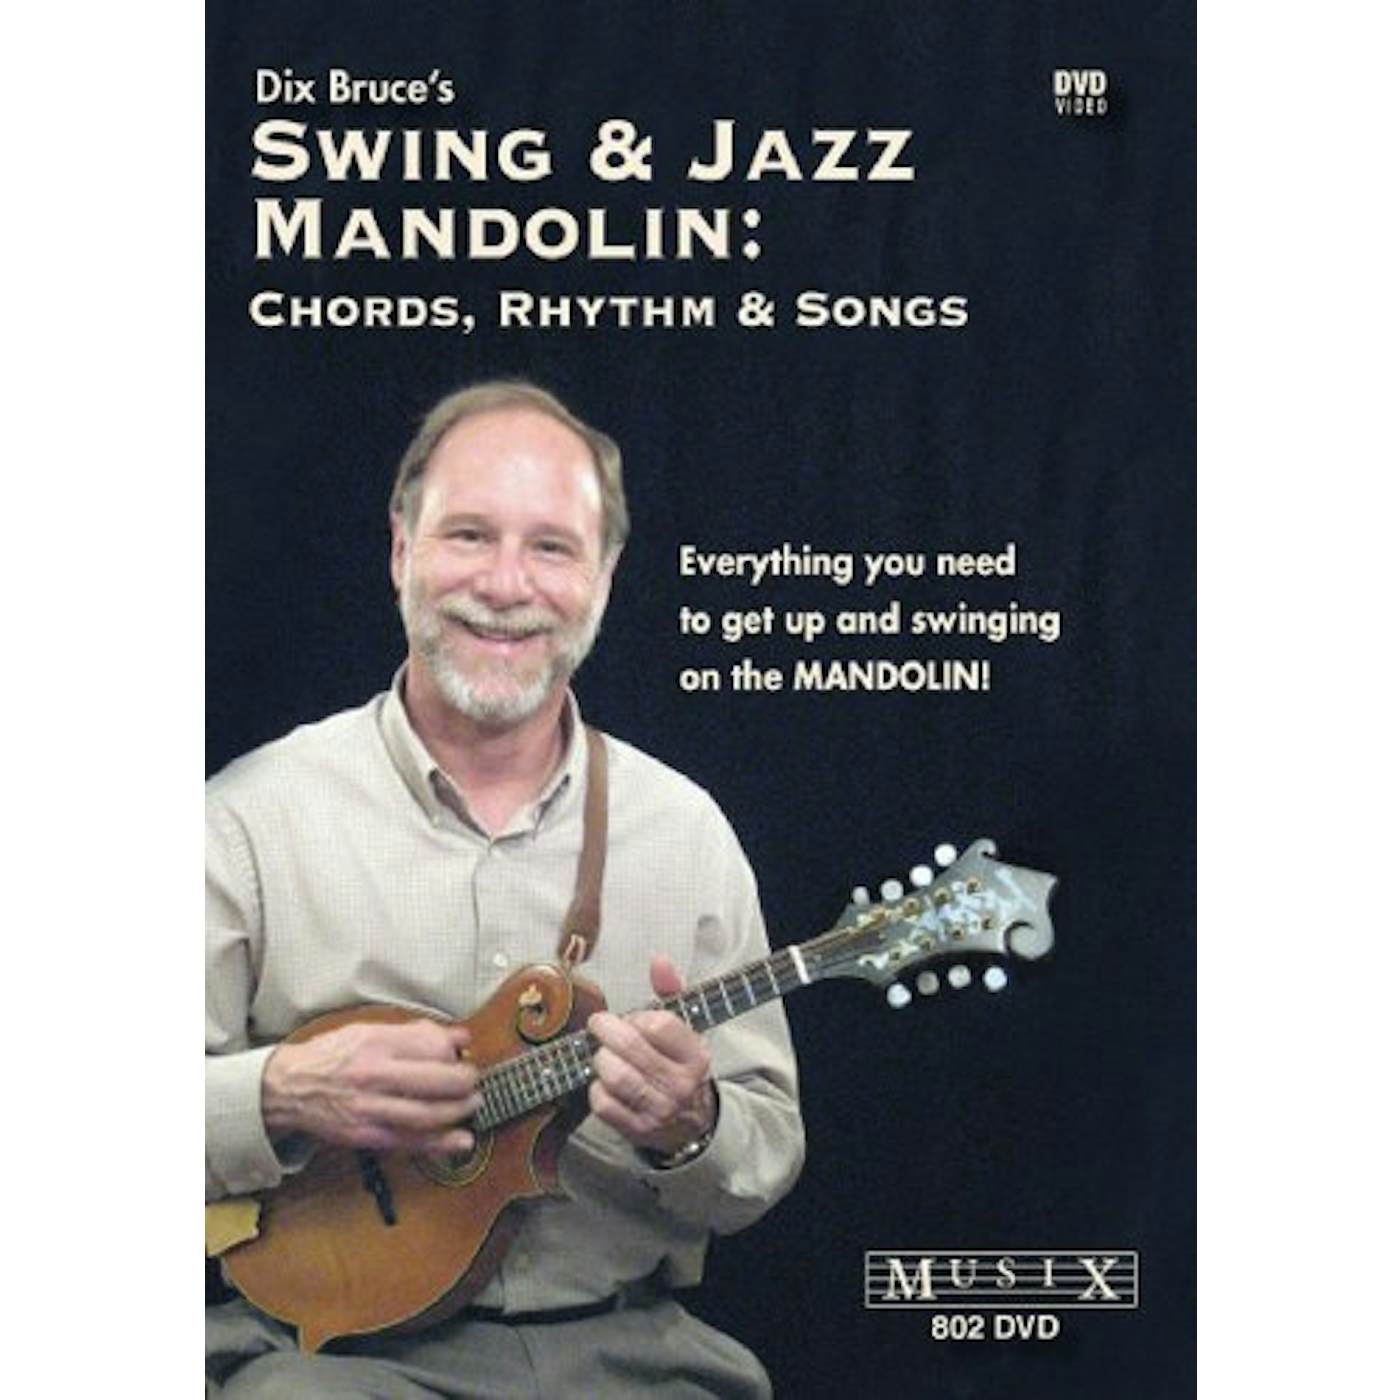 Dix Bruce SWING & JAZZ MANDOLIN CHORDS RHYTHM & SONGS DVD